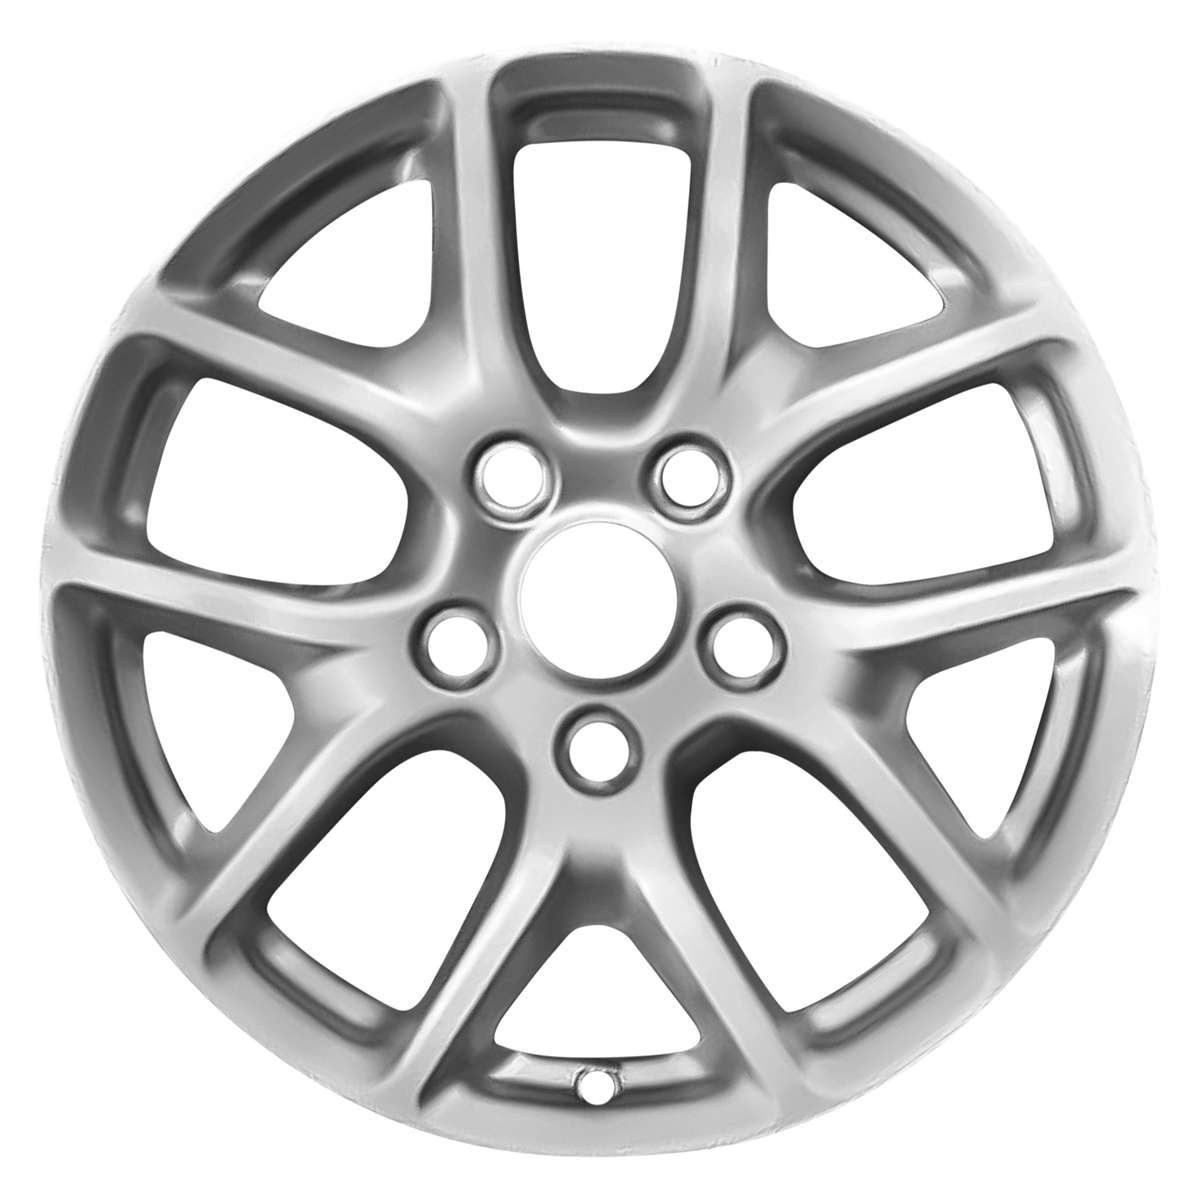 2017 Chrysler Pacifica 17" OEM Wheel Rim W2592S